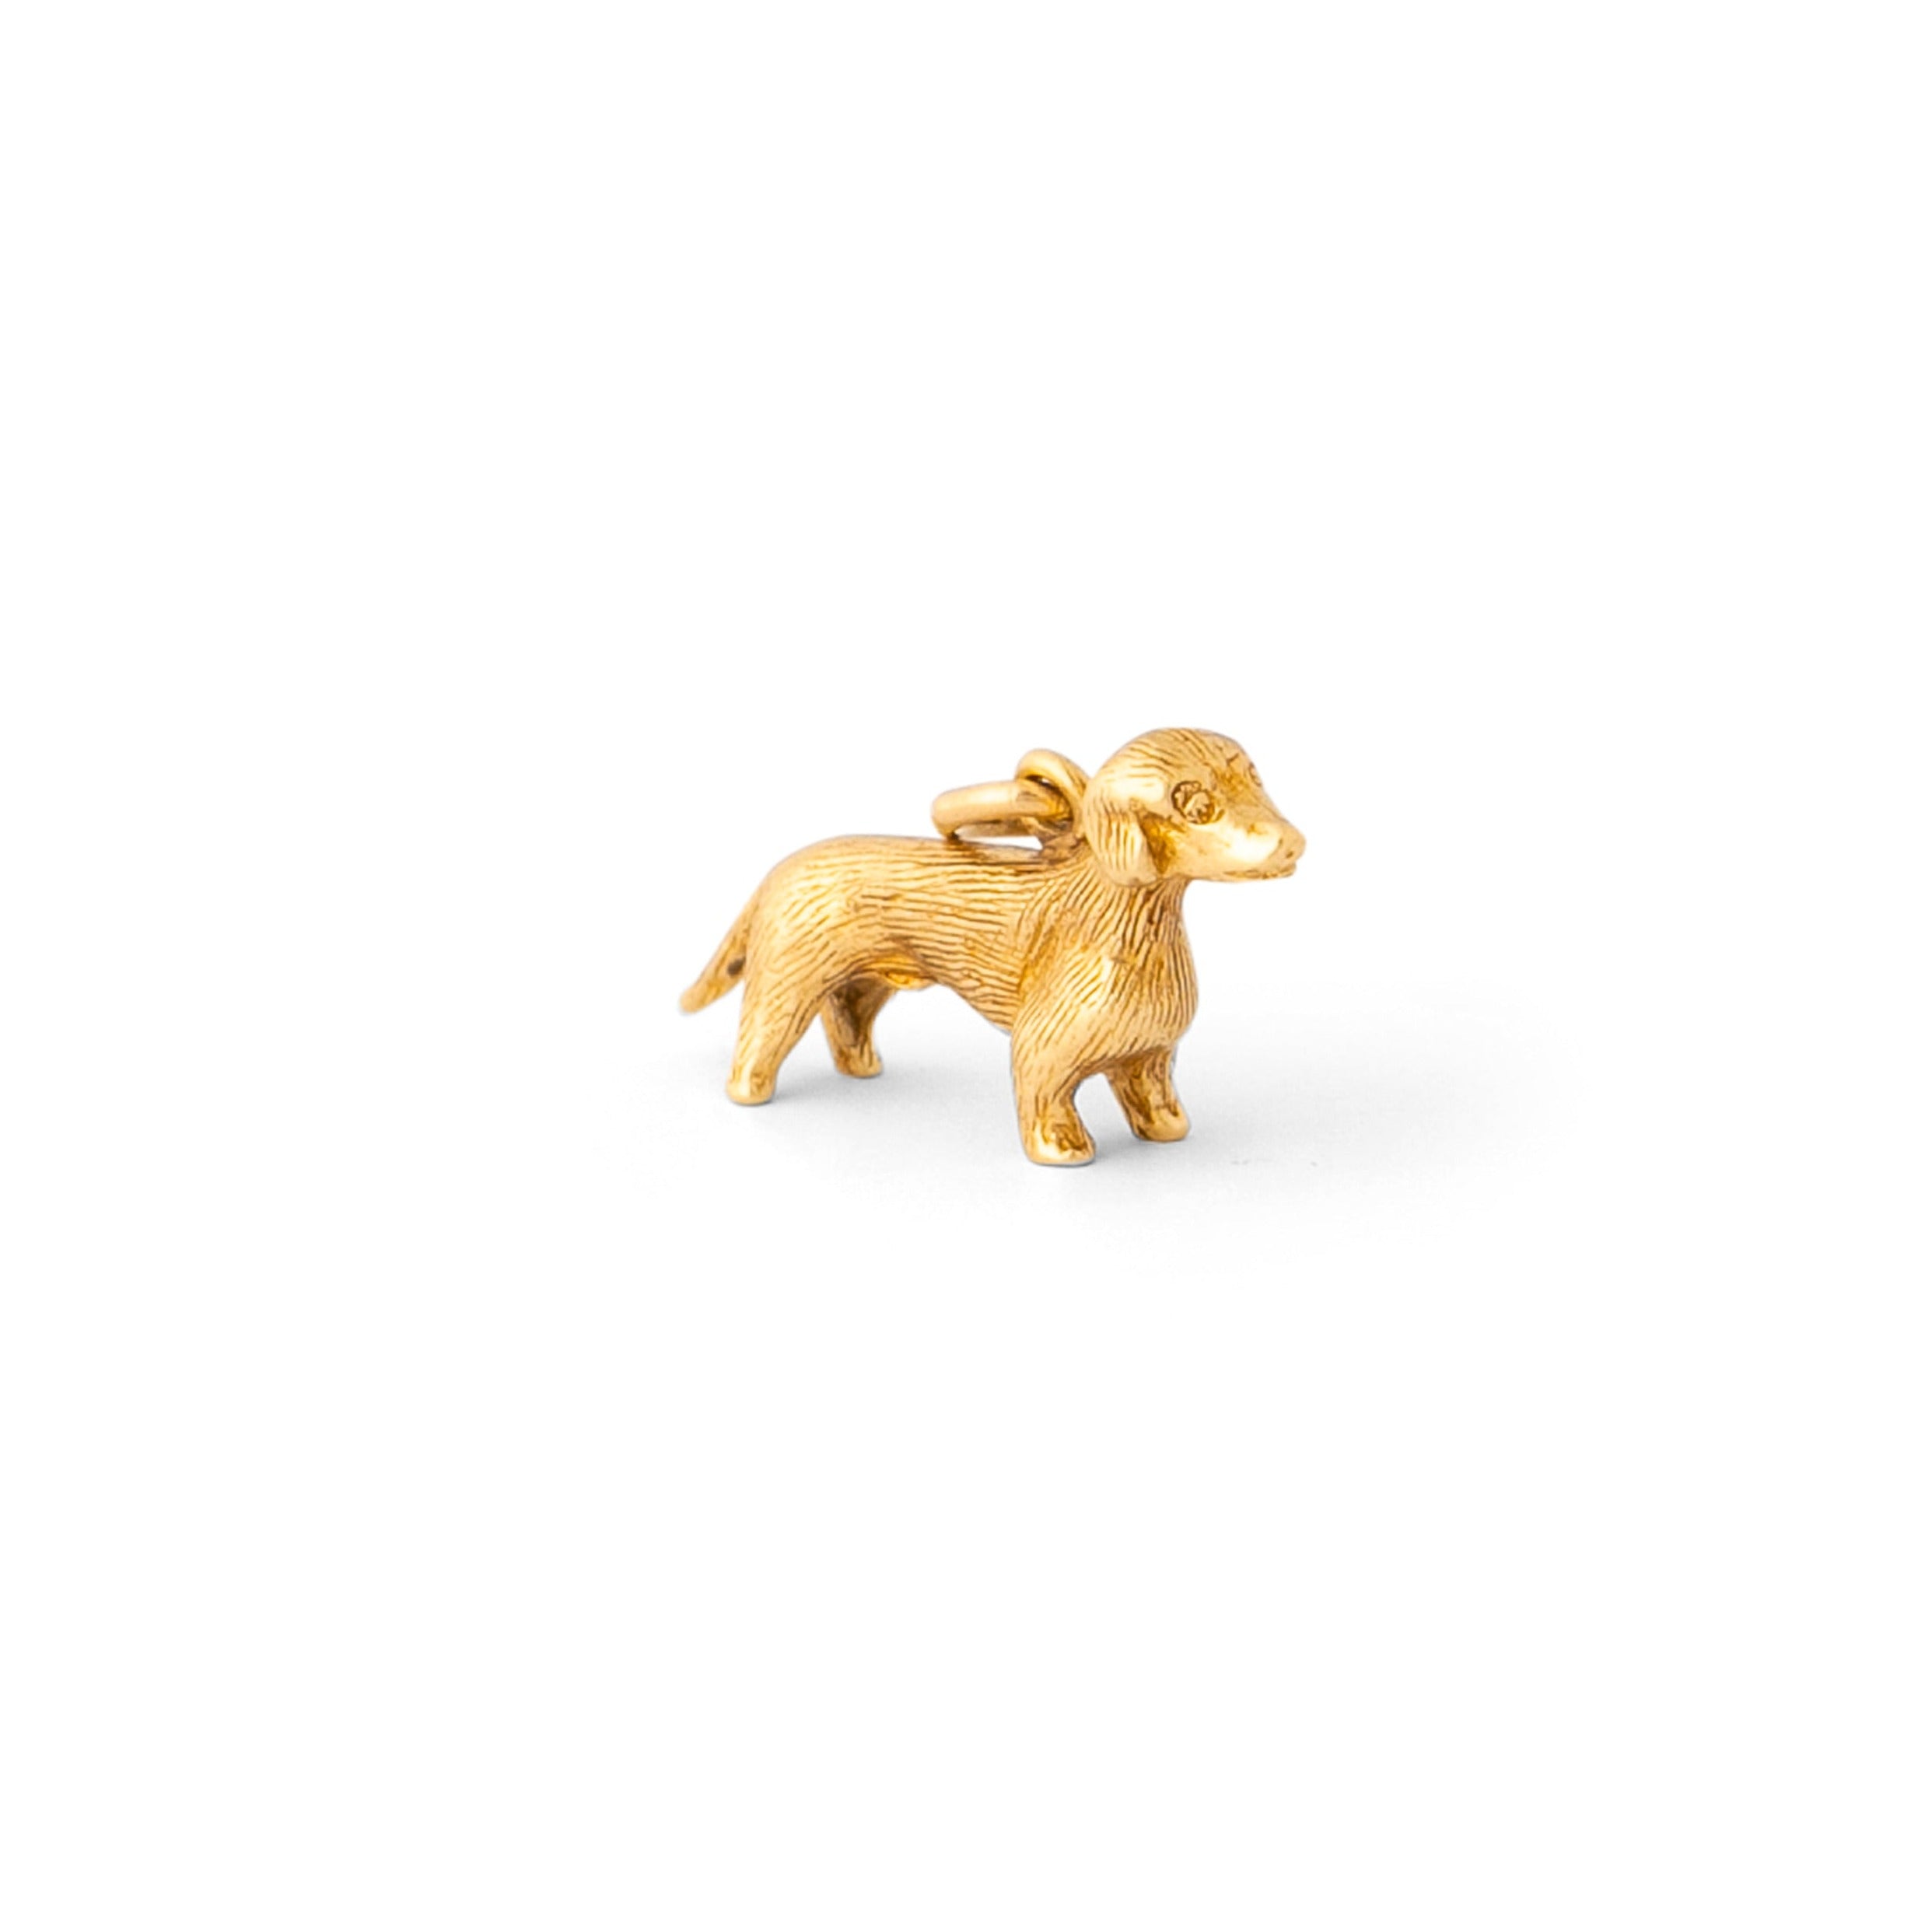 Dachshund 10k Gold Dog Charm